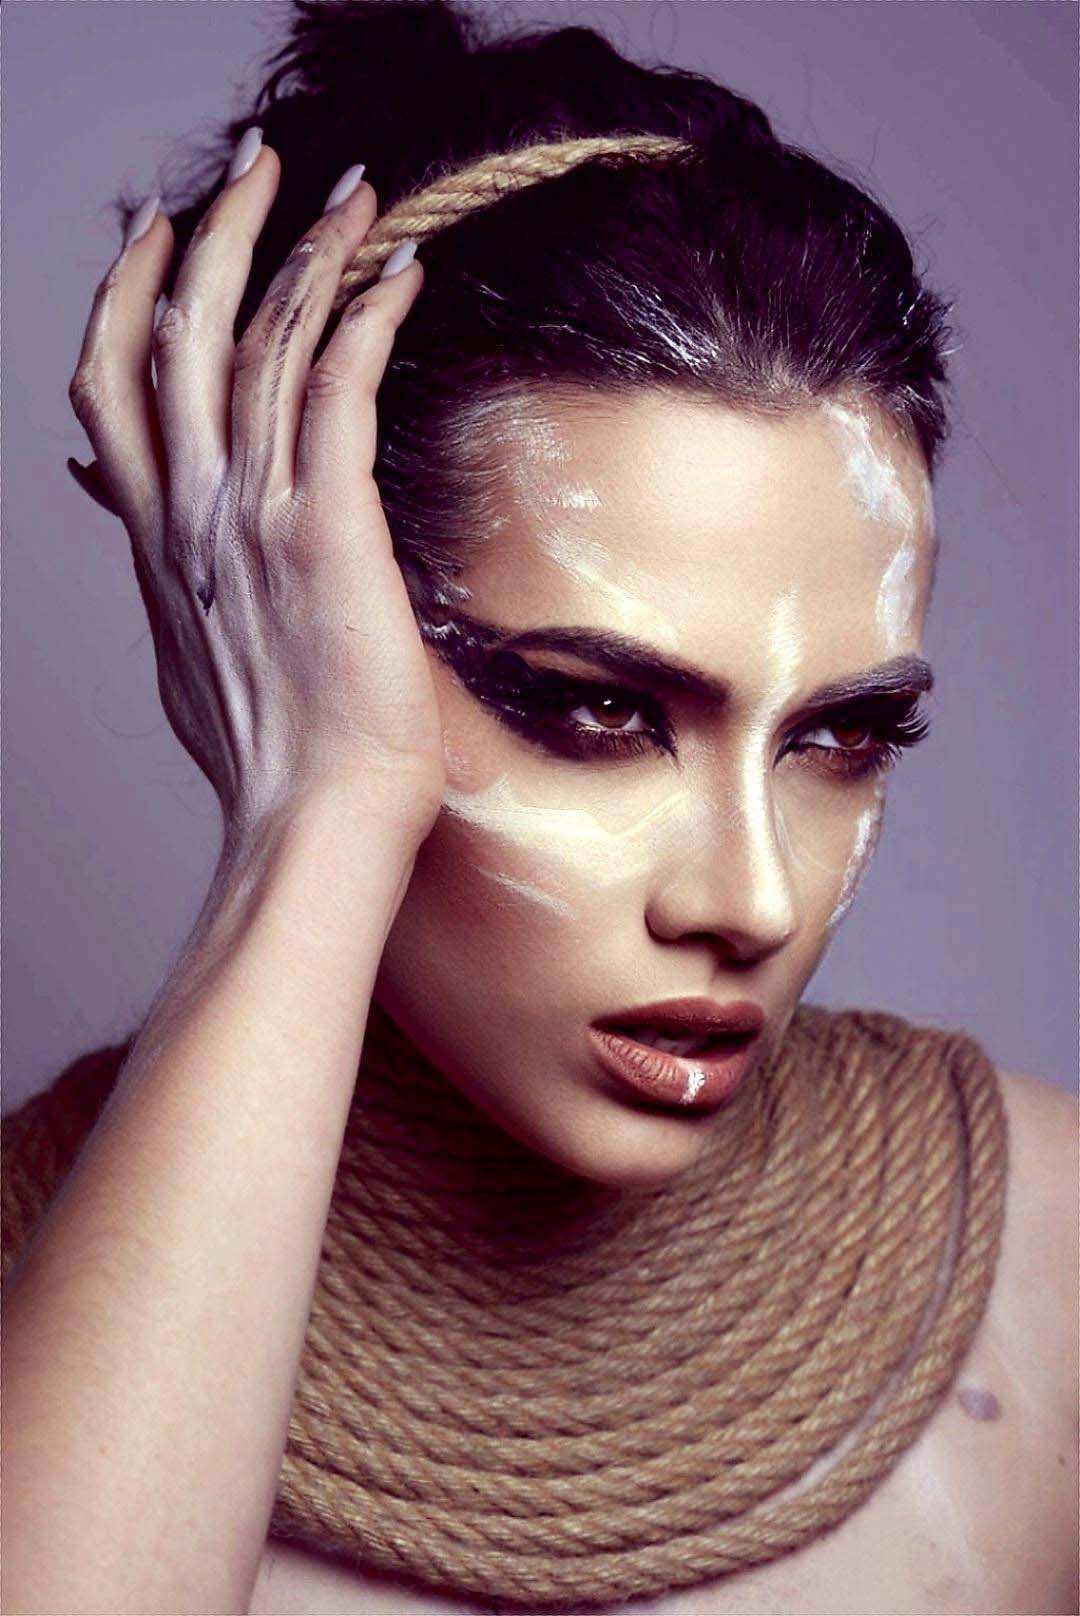 Zavod studio model Ksenia makeup by Alona Dmytrenko